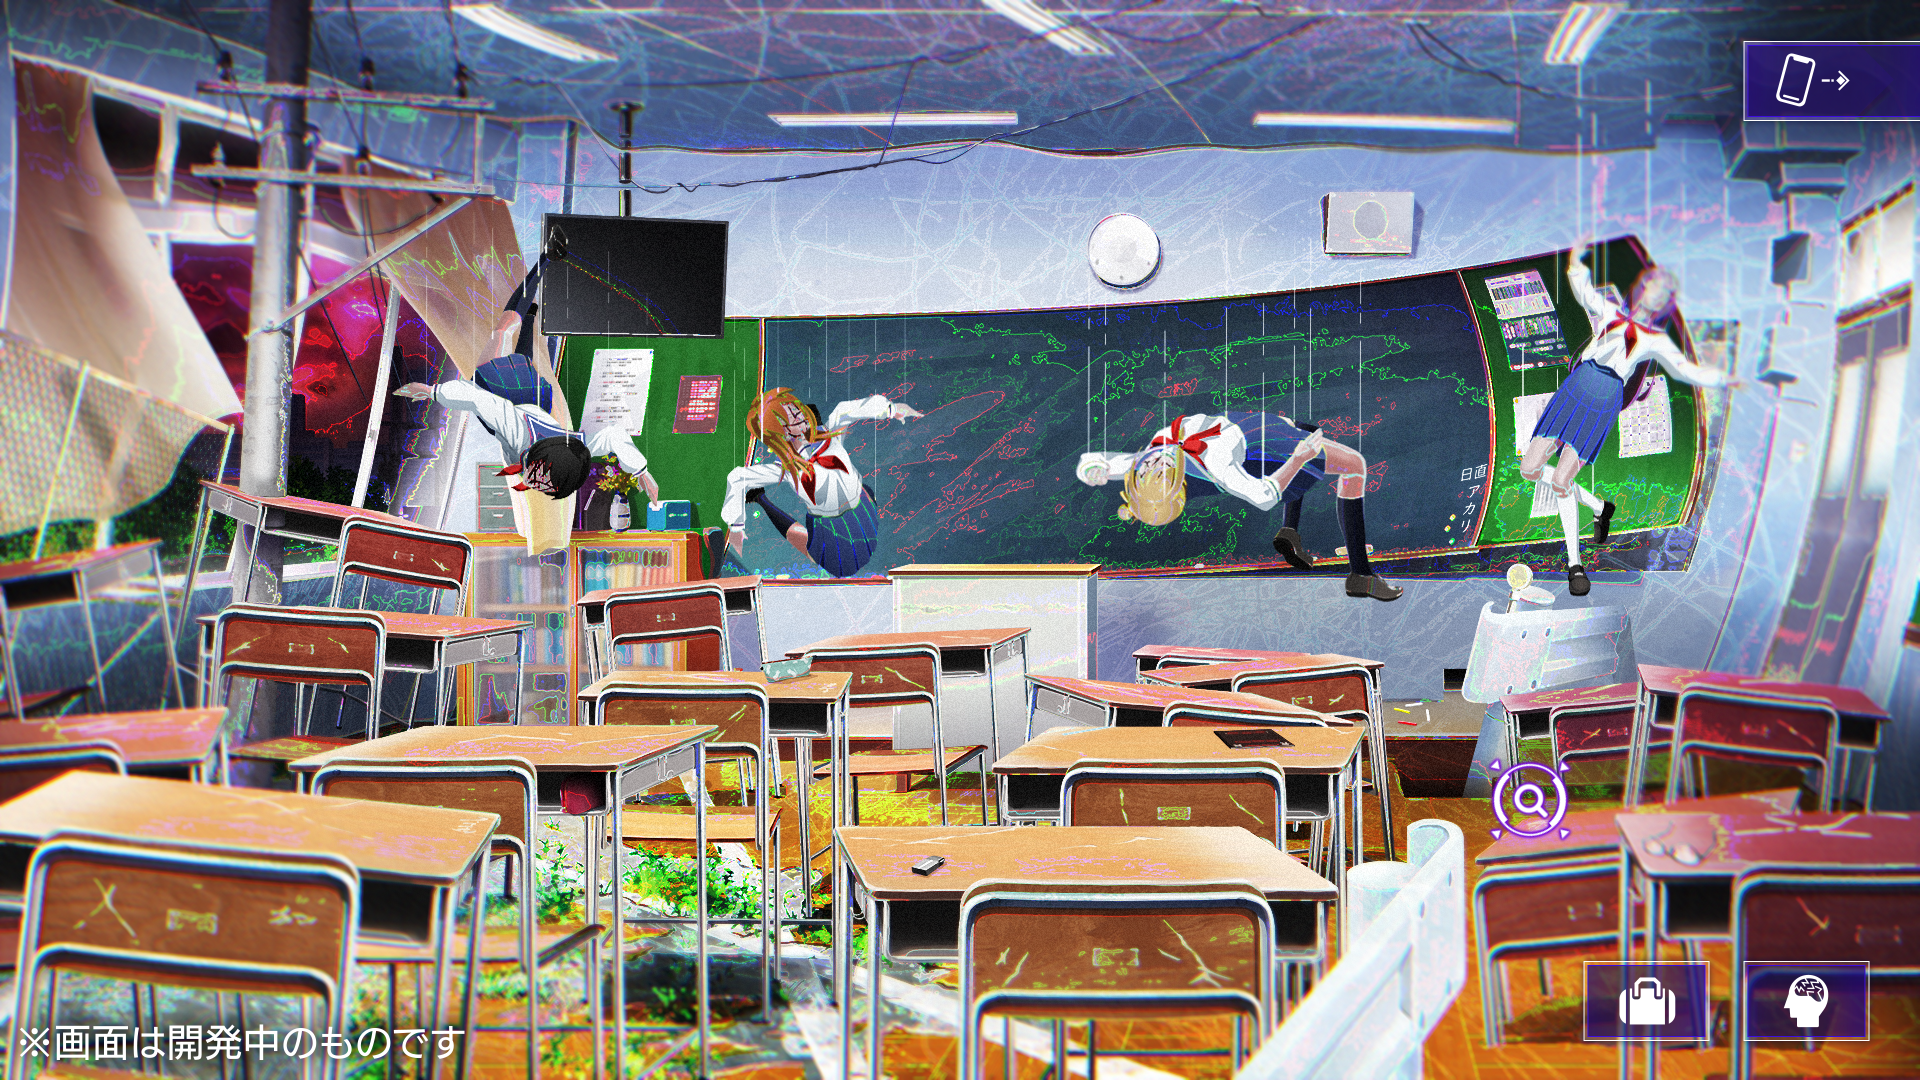 『雑音系少年少女』発表。東京と似て異なる街「雑音スクランブルシティ」に転移された記憶喪失の少年少女たちを描くアドベンチャーゲーム_003